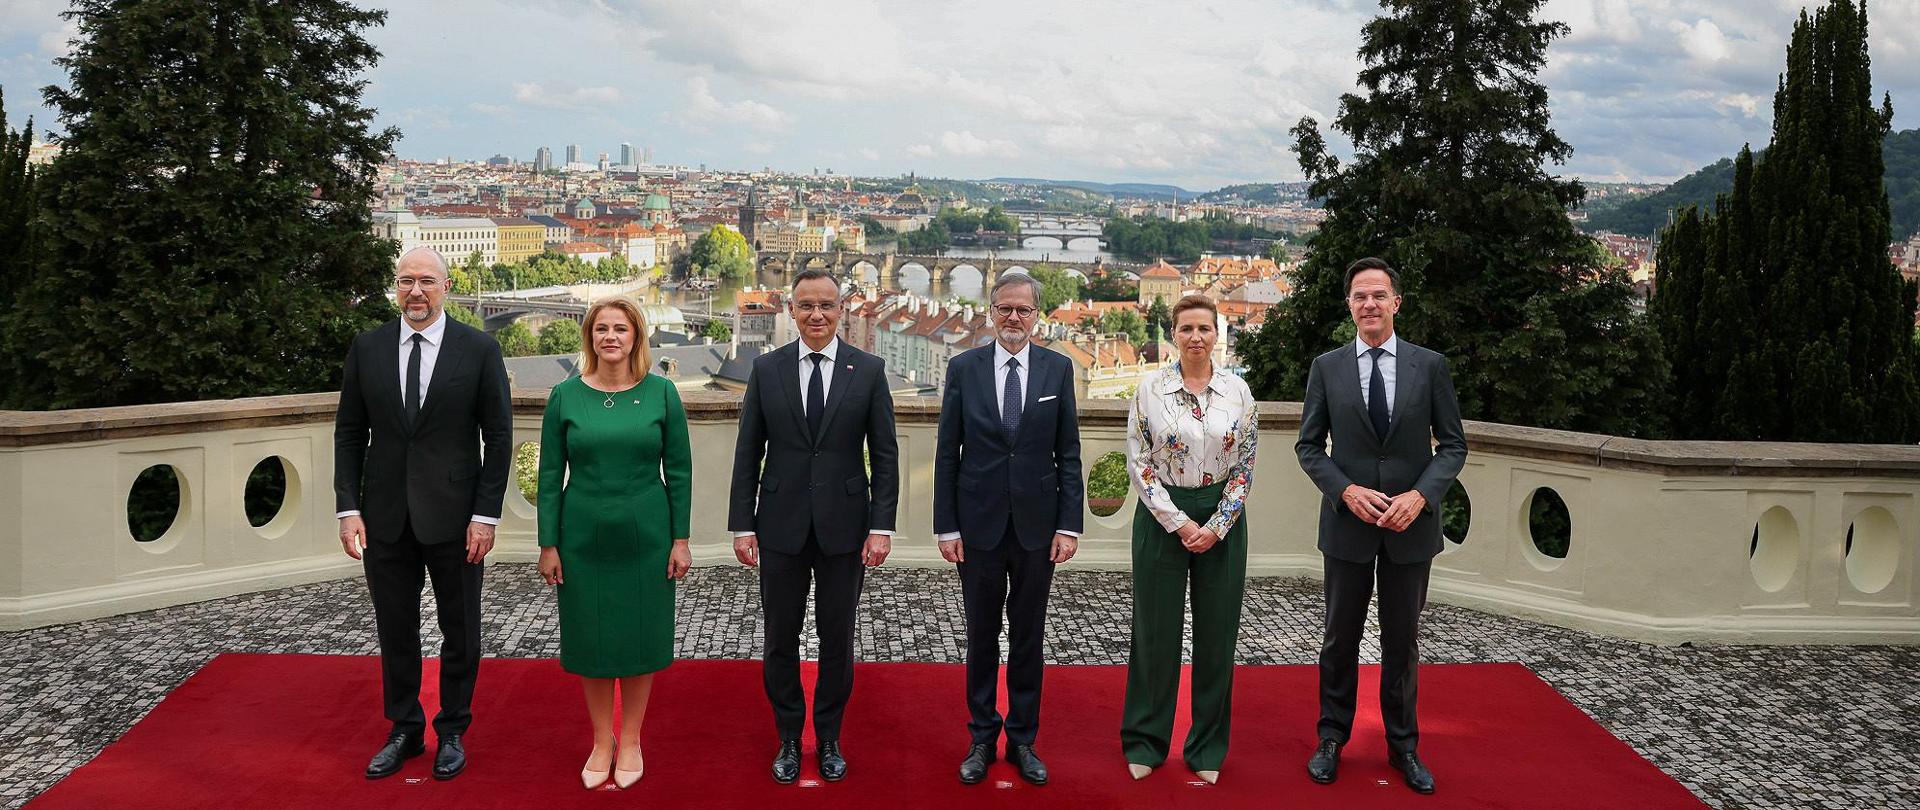 Prezydent RP na szczycie amunicyjnym w Pradze